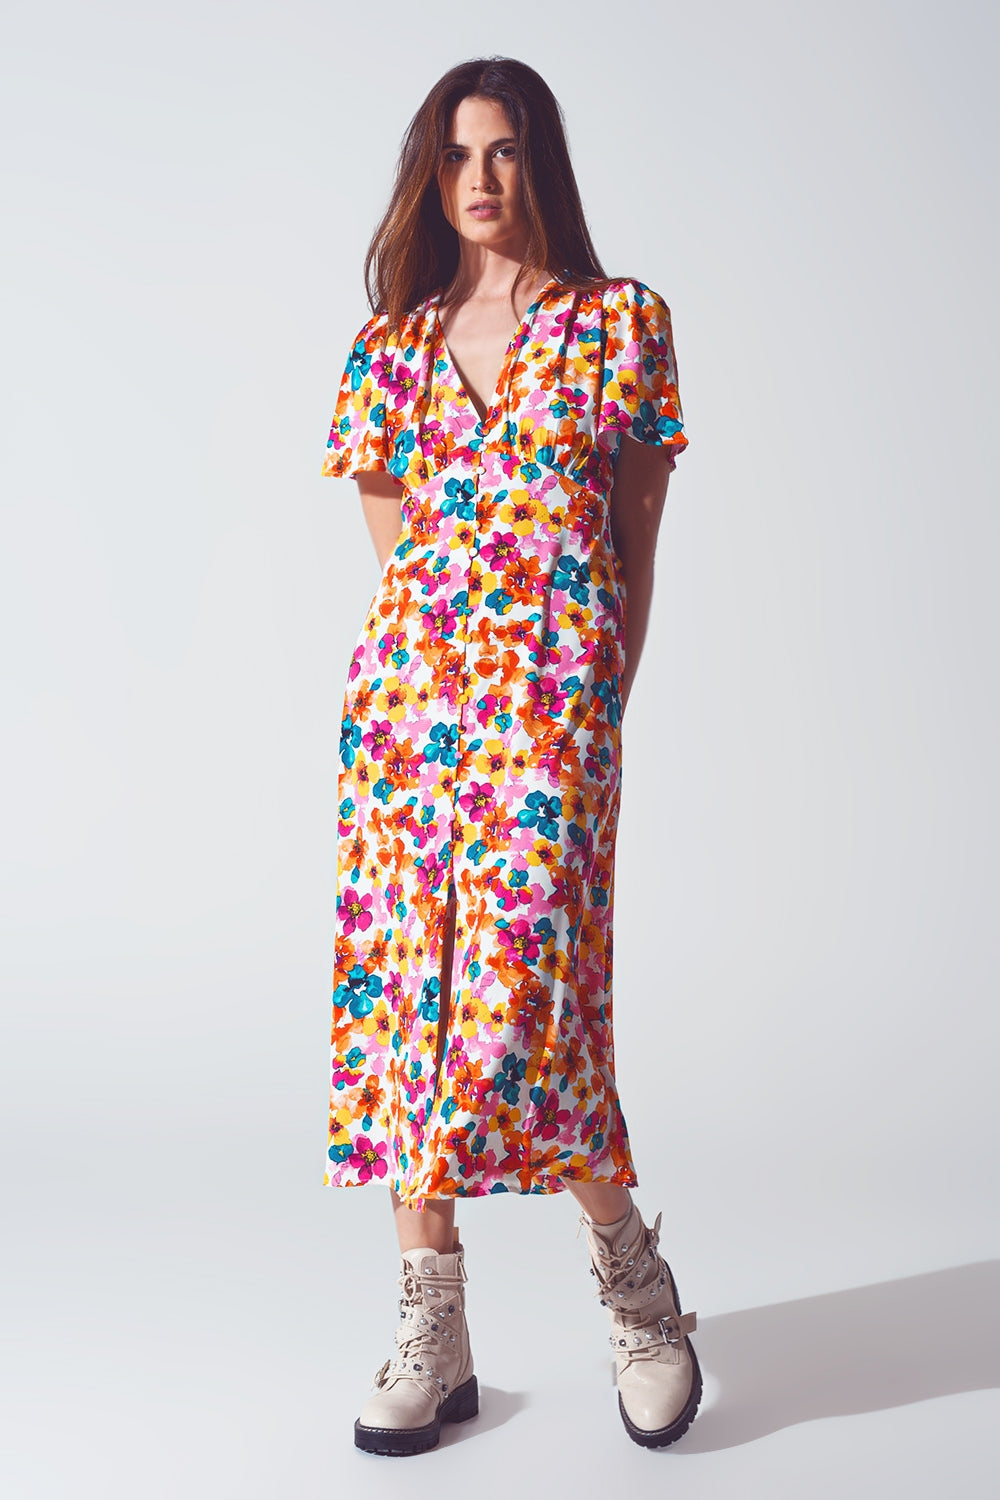 Midi Cinched In Wist Dress In Multicolot Floral Print - Szua Store